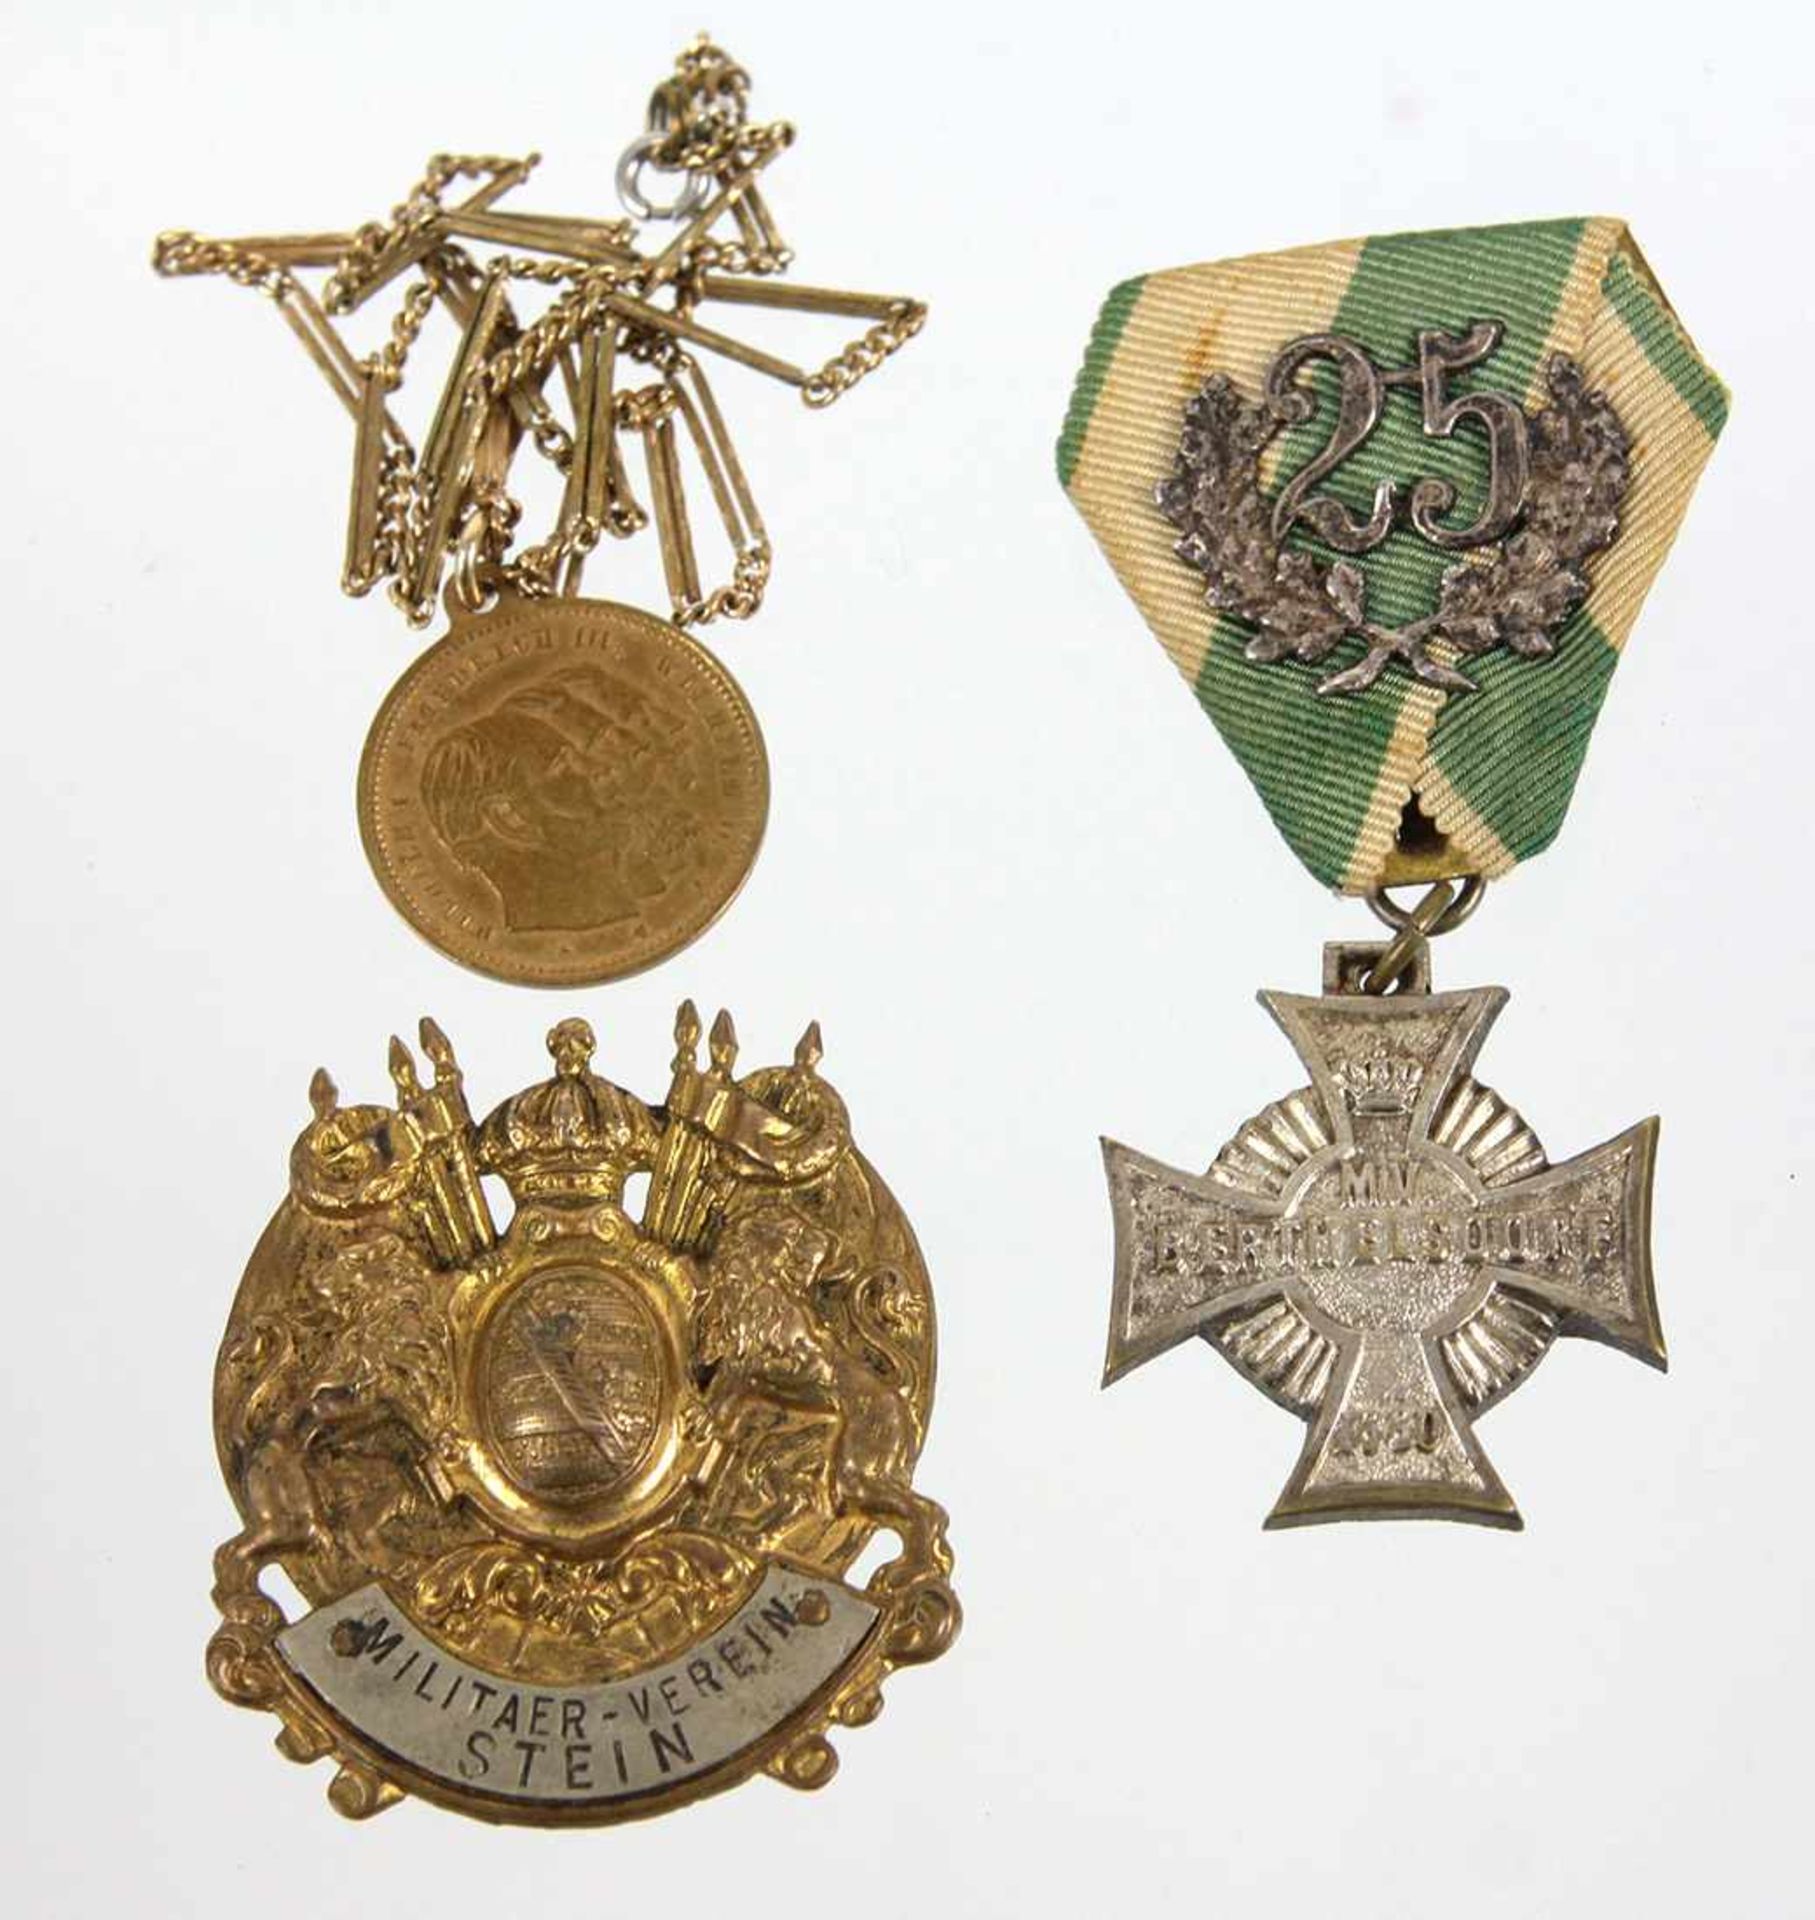 2 Militärverein Abzeichen Sachsen u.a. dabei goldfarbenes hohlgeprägtes Abzeichen Sächsischer